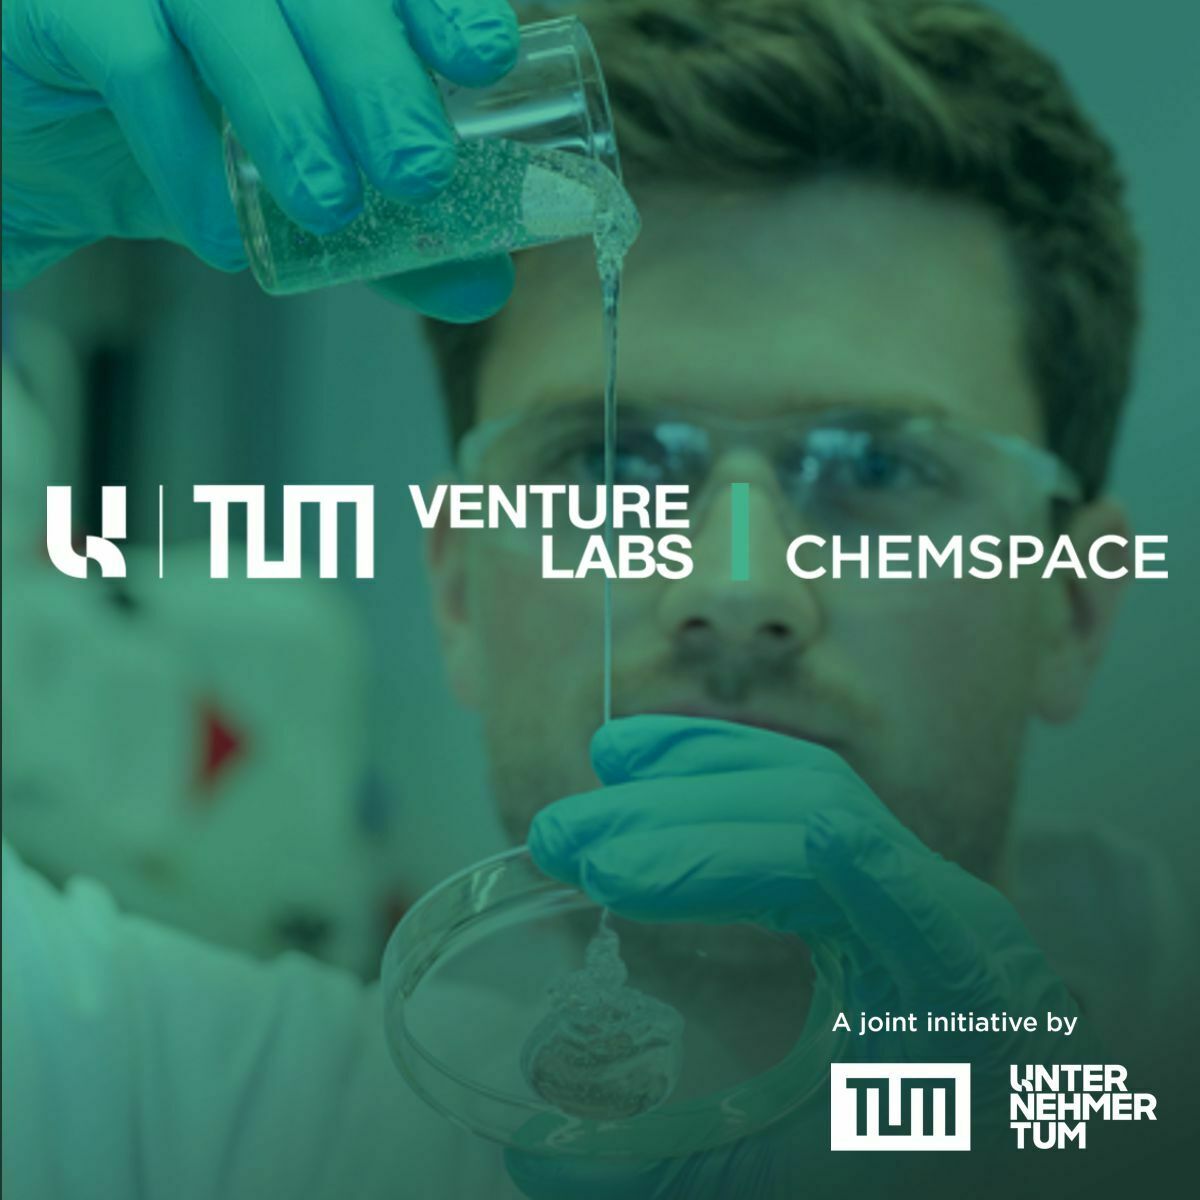 TUM Venture Lab ChemSPACE